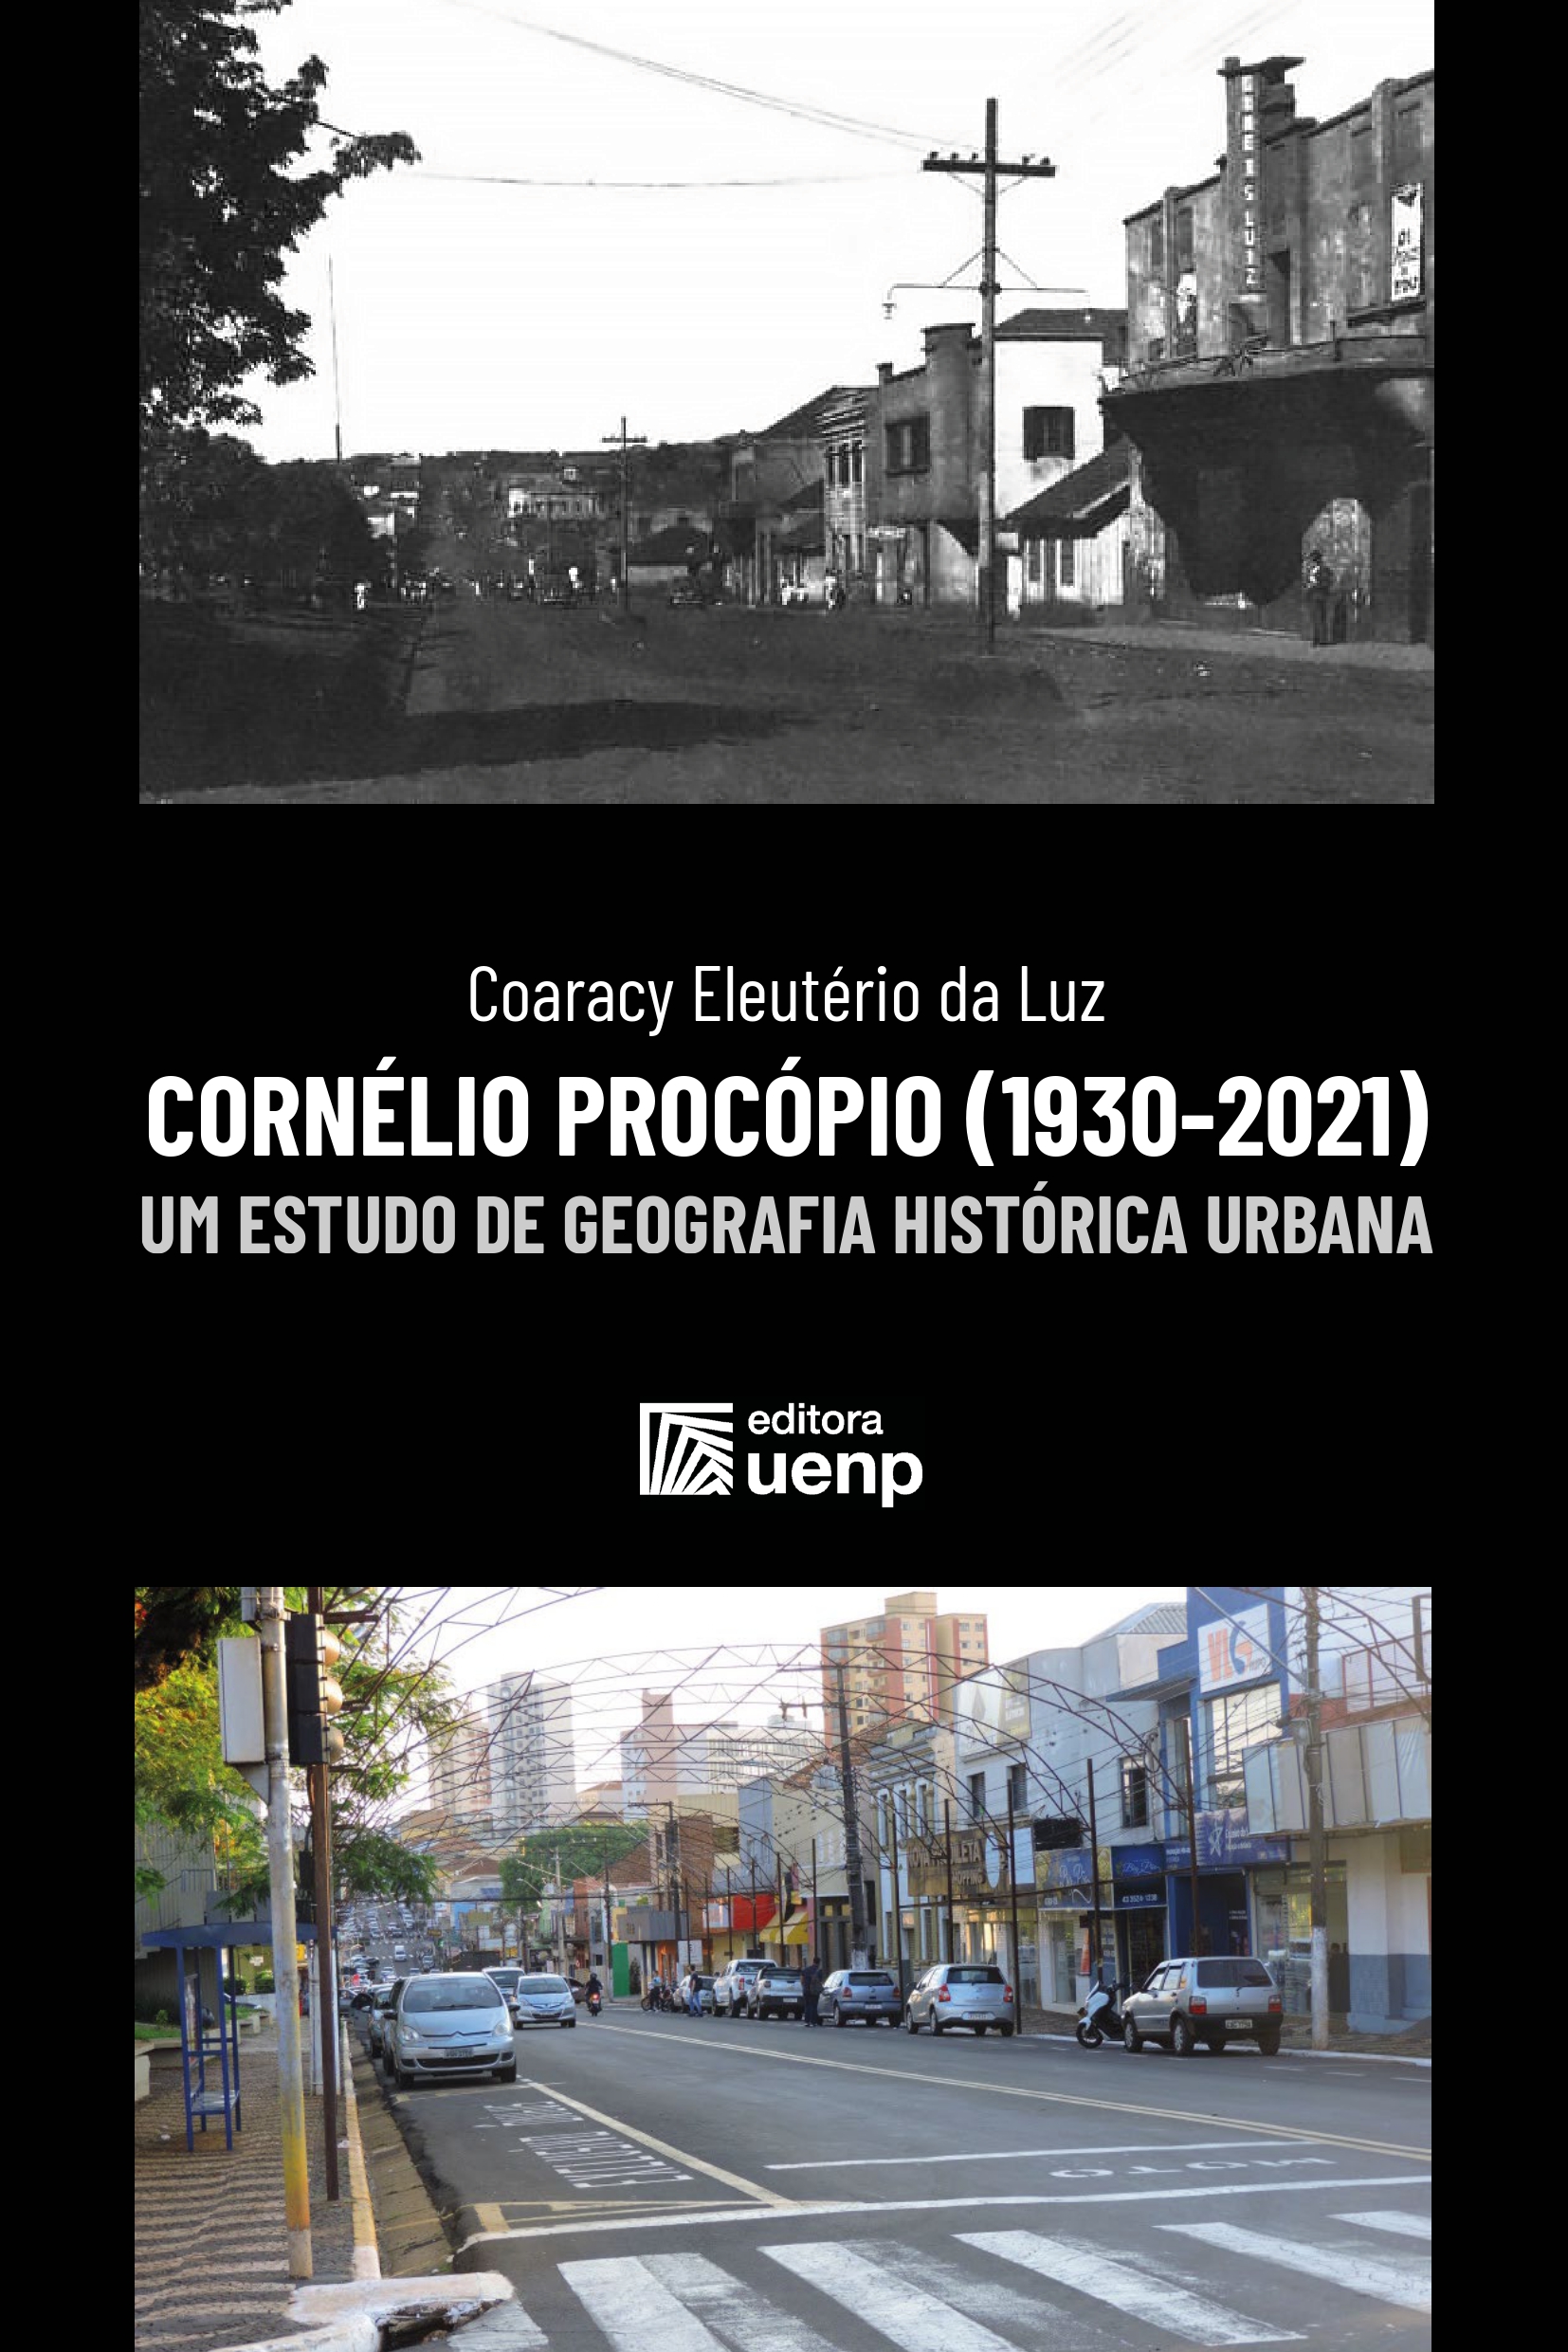 Cornélio Procópio (1930-2021): um estudo de Geografia Histórica Urbana